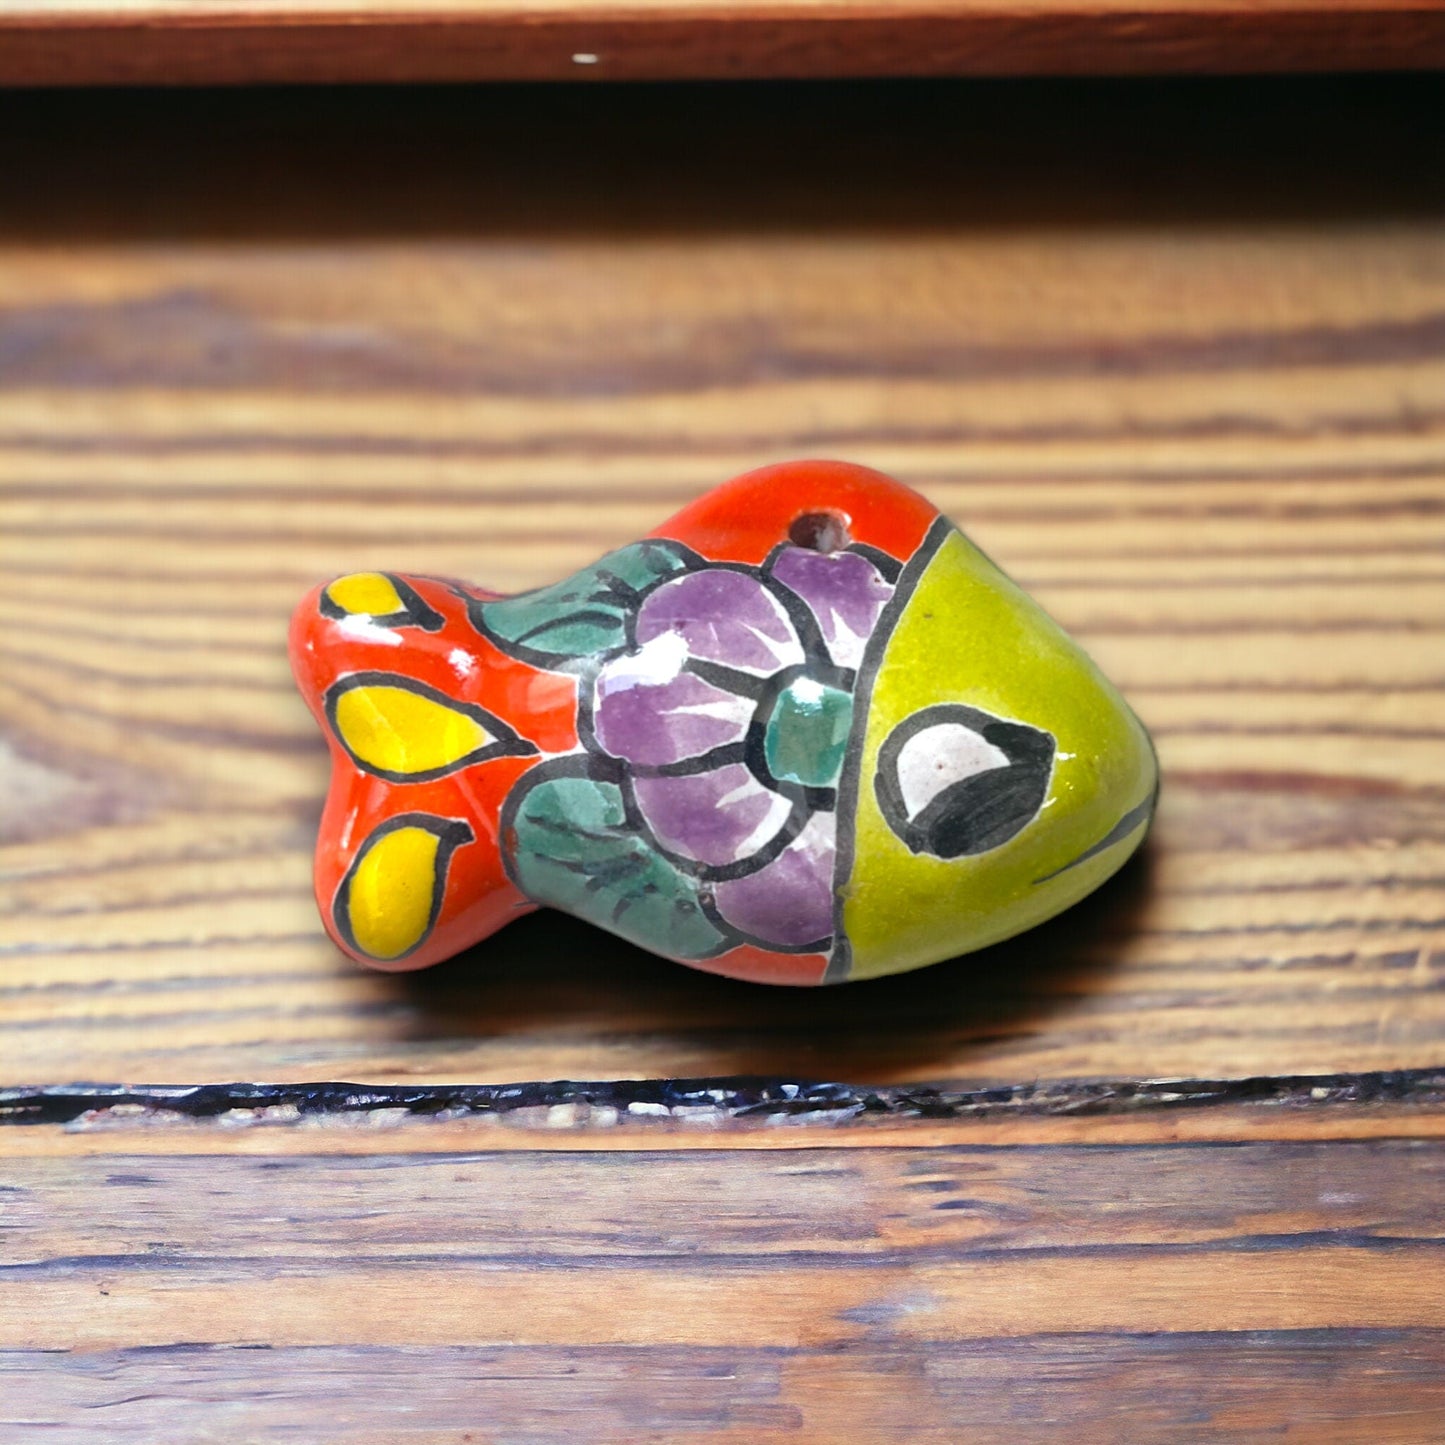 Vibrant Talavera Fish Ornament | Handcrafted Mexican Ceramic Fish (Small)